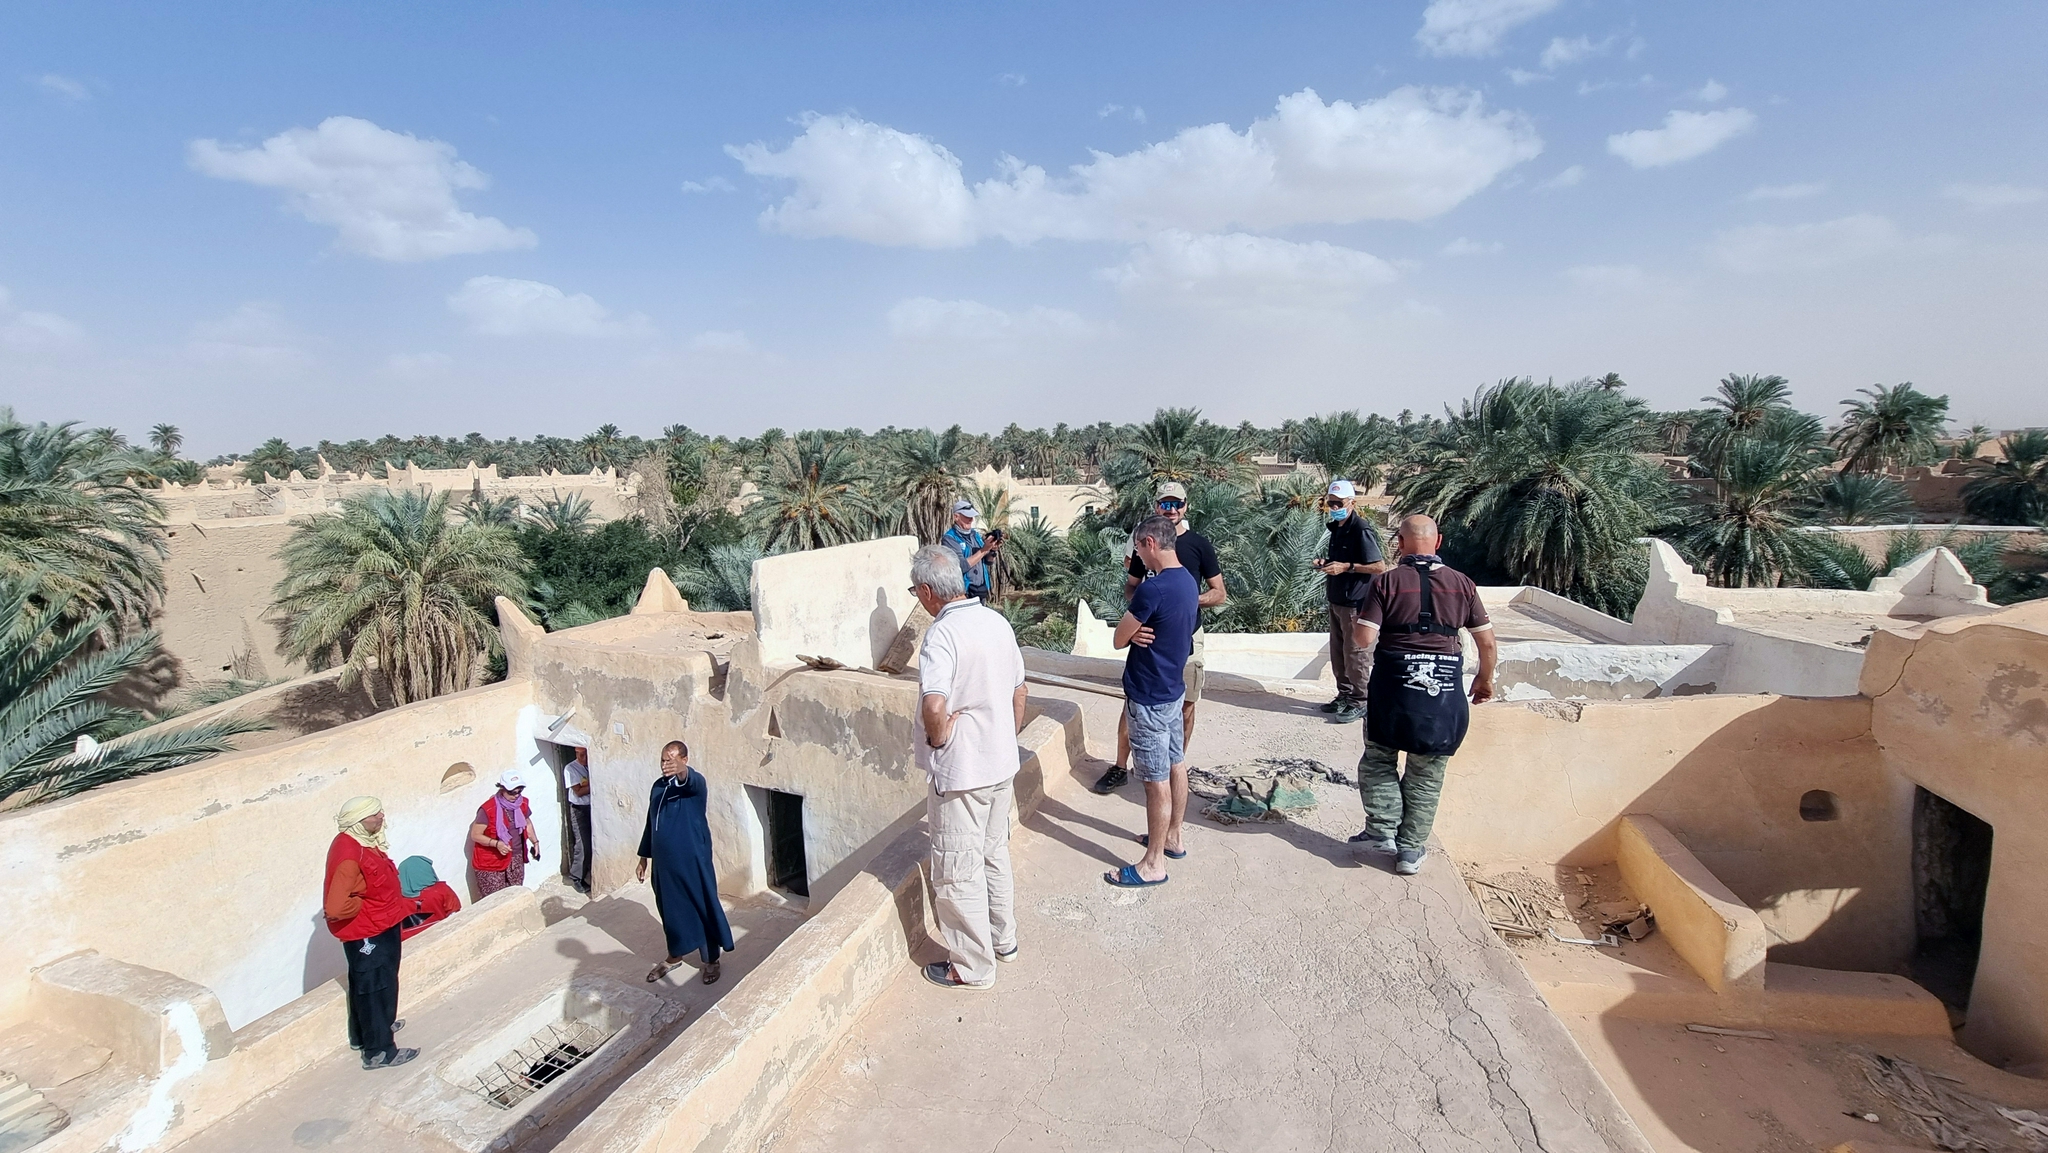 10月19日，一个超过100人的欧洲旅游团抵达利比亚西部古镇古达米斯，计划开展为期12日的旅游行程。这是自2011年卡扎菲政权被推翻后利比亚首次迎来欧洲团队游客。新华社发（哈姆扎·图尔基亚摄）